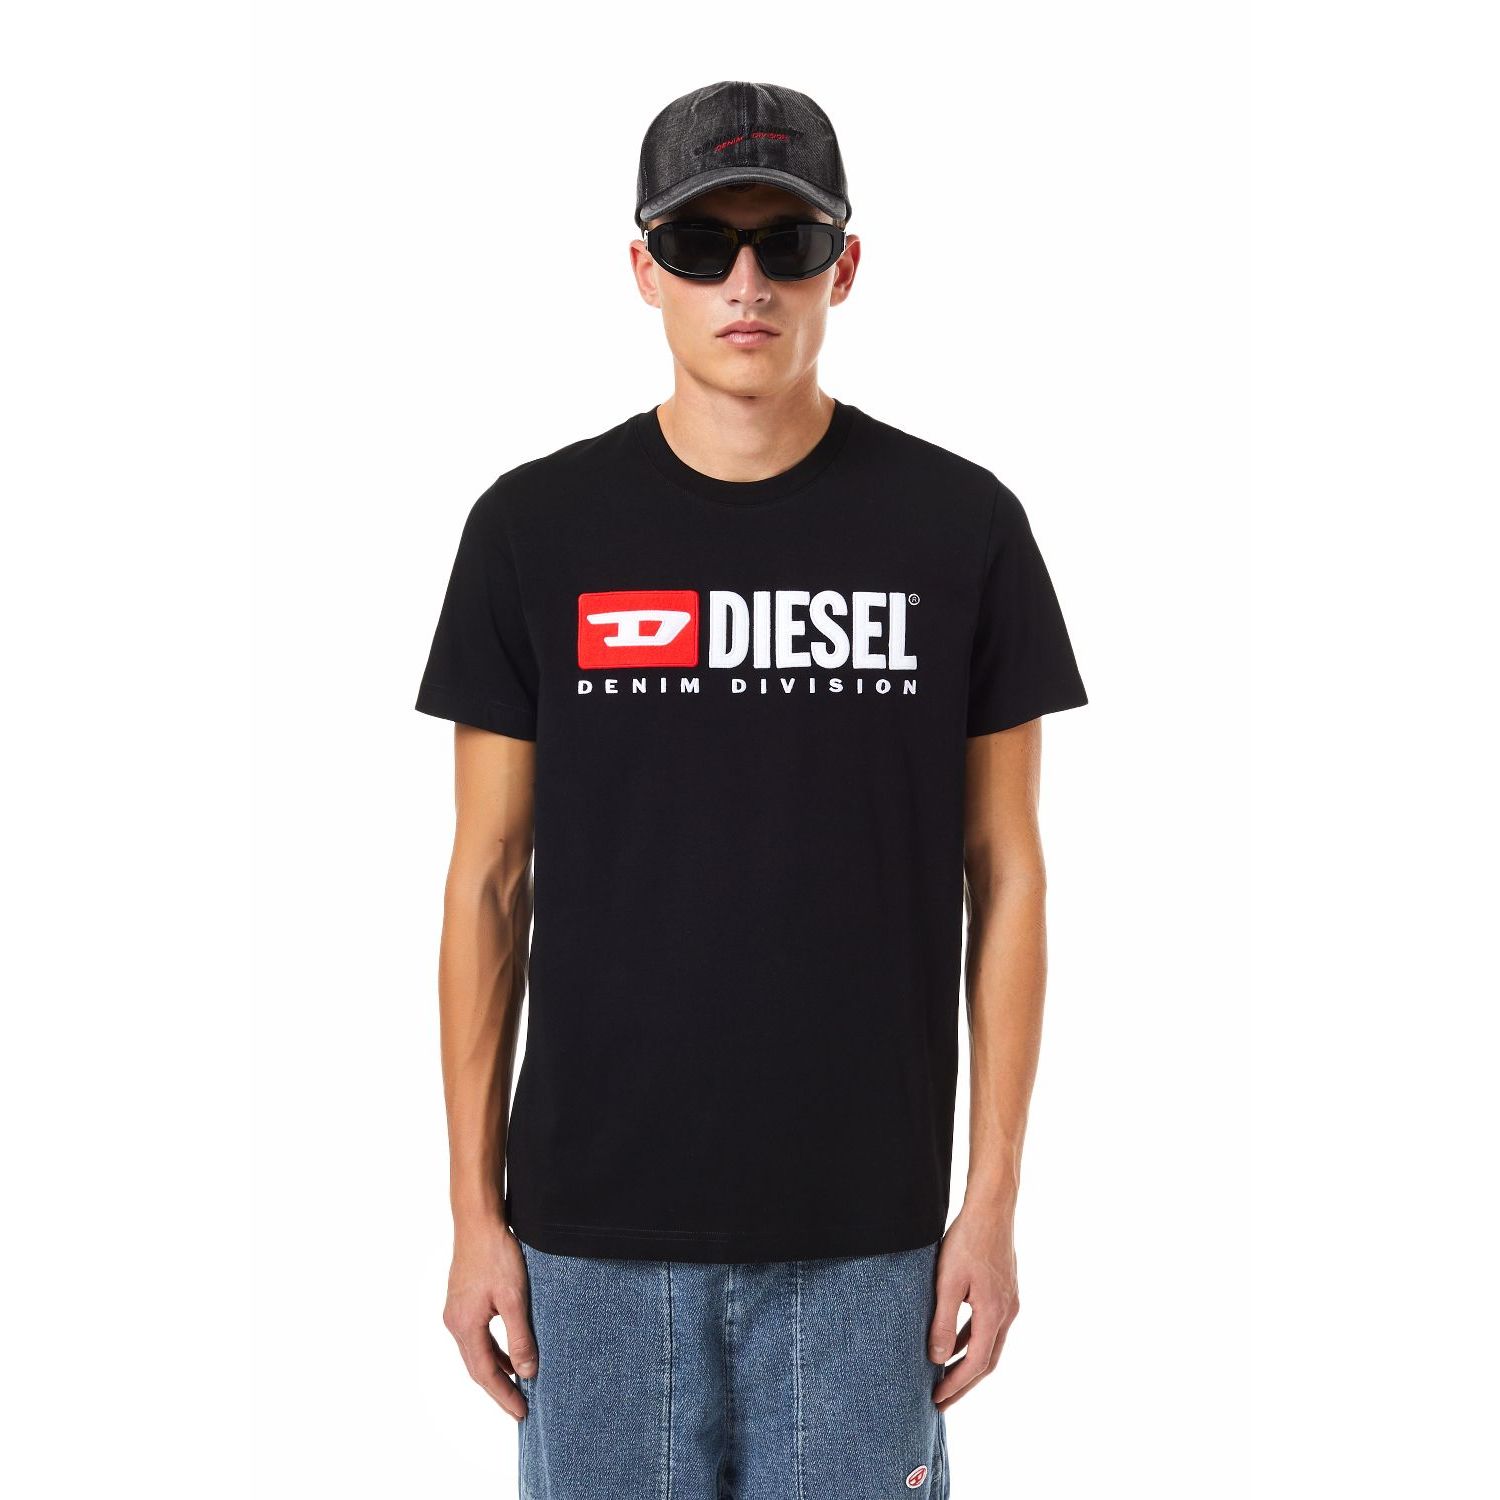 Diesel t-diegor-div magliette t-shirt zwart